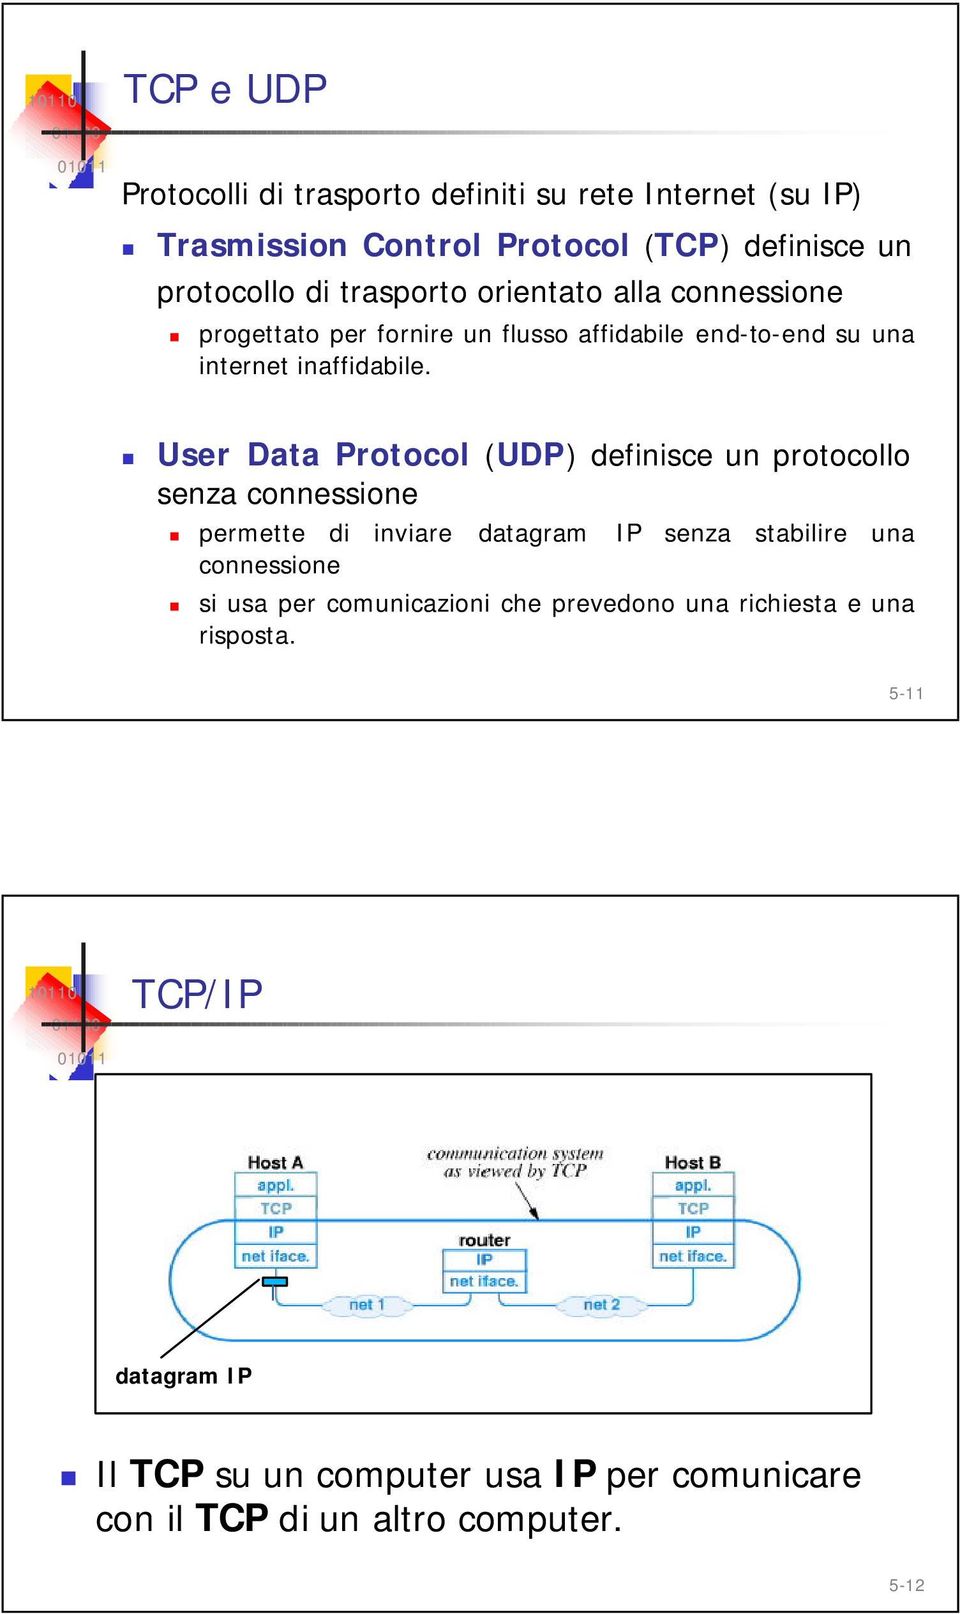 User Data Protocol (UDP) definisce un protocollo senza connessione permette di inviare datagram connessione IP senza stabilire una si usa